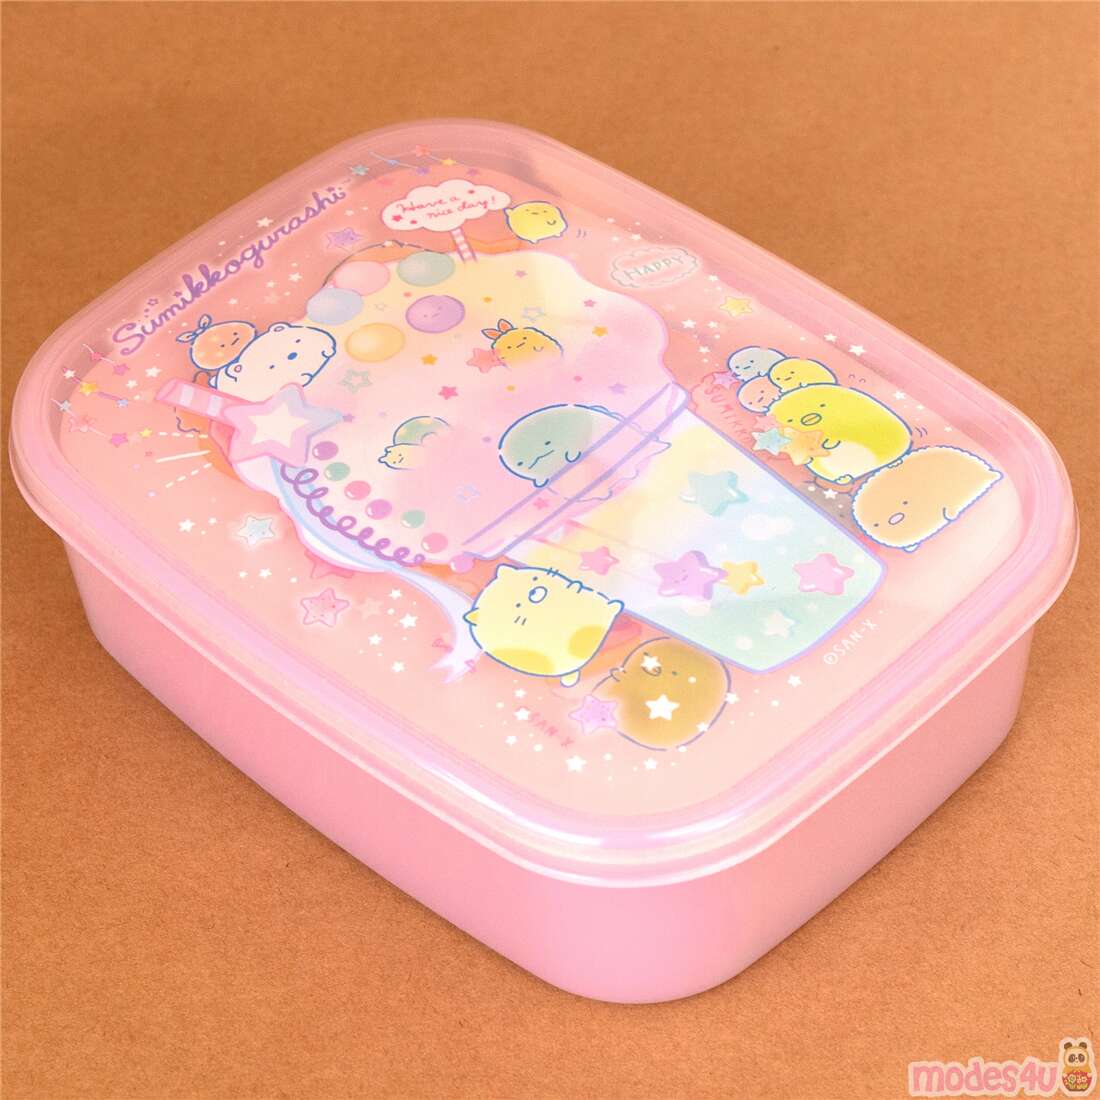 Sanrio Bento Lunch Box  Lunch box, Bento box, Cute bento boxes